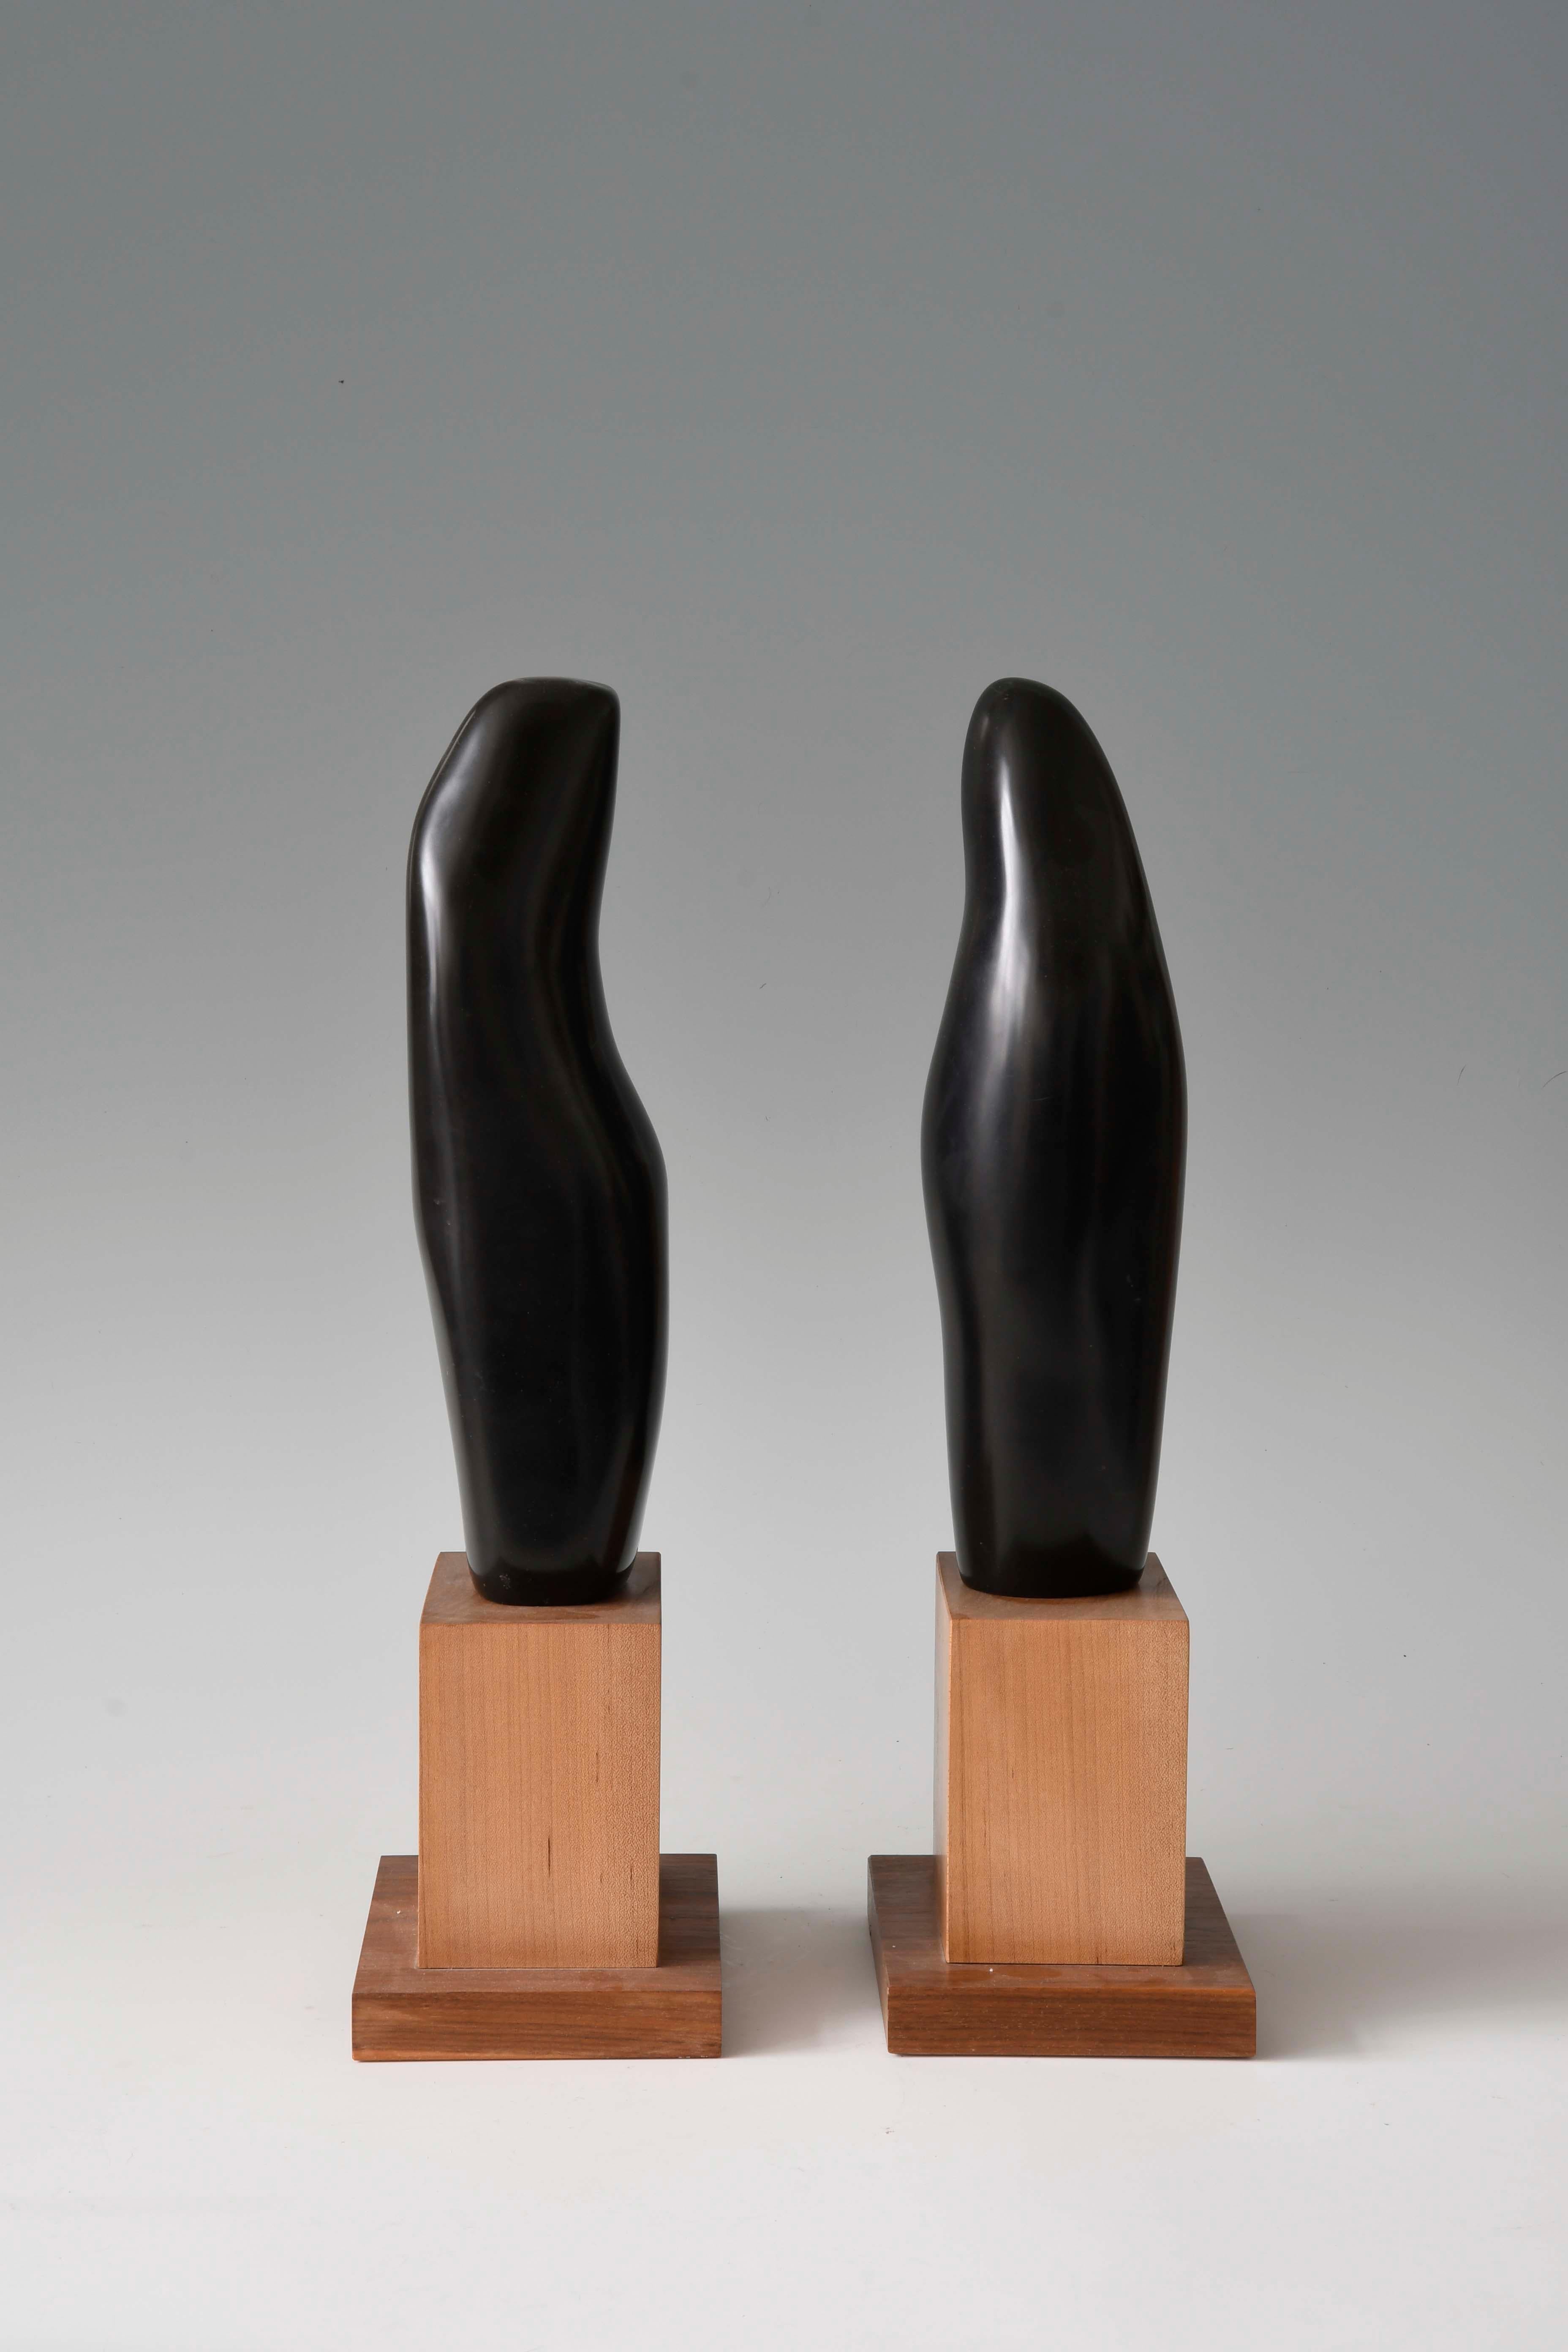 Sinuous Dance, sculpture de deux figures abstraites, marbre noir avec base en bois - Sculpture de Lilian R Engel